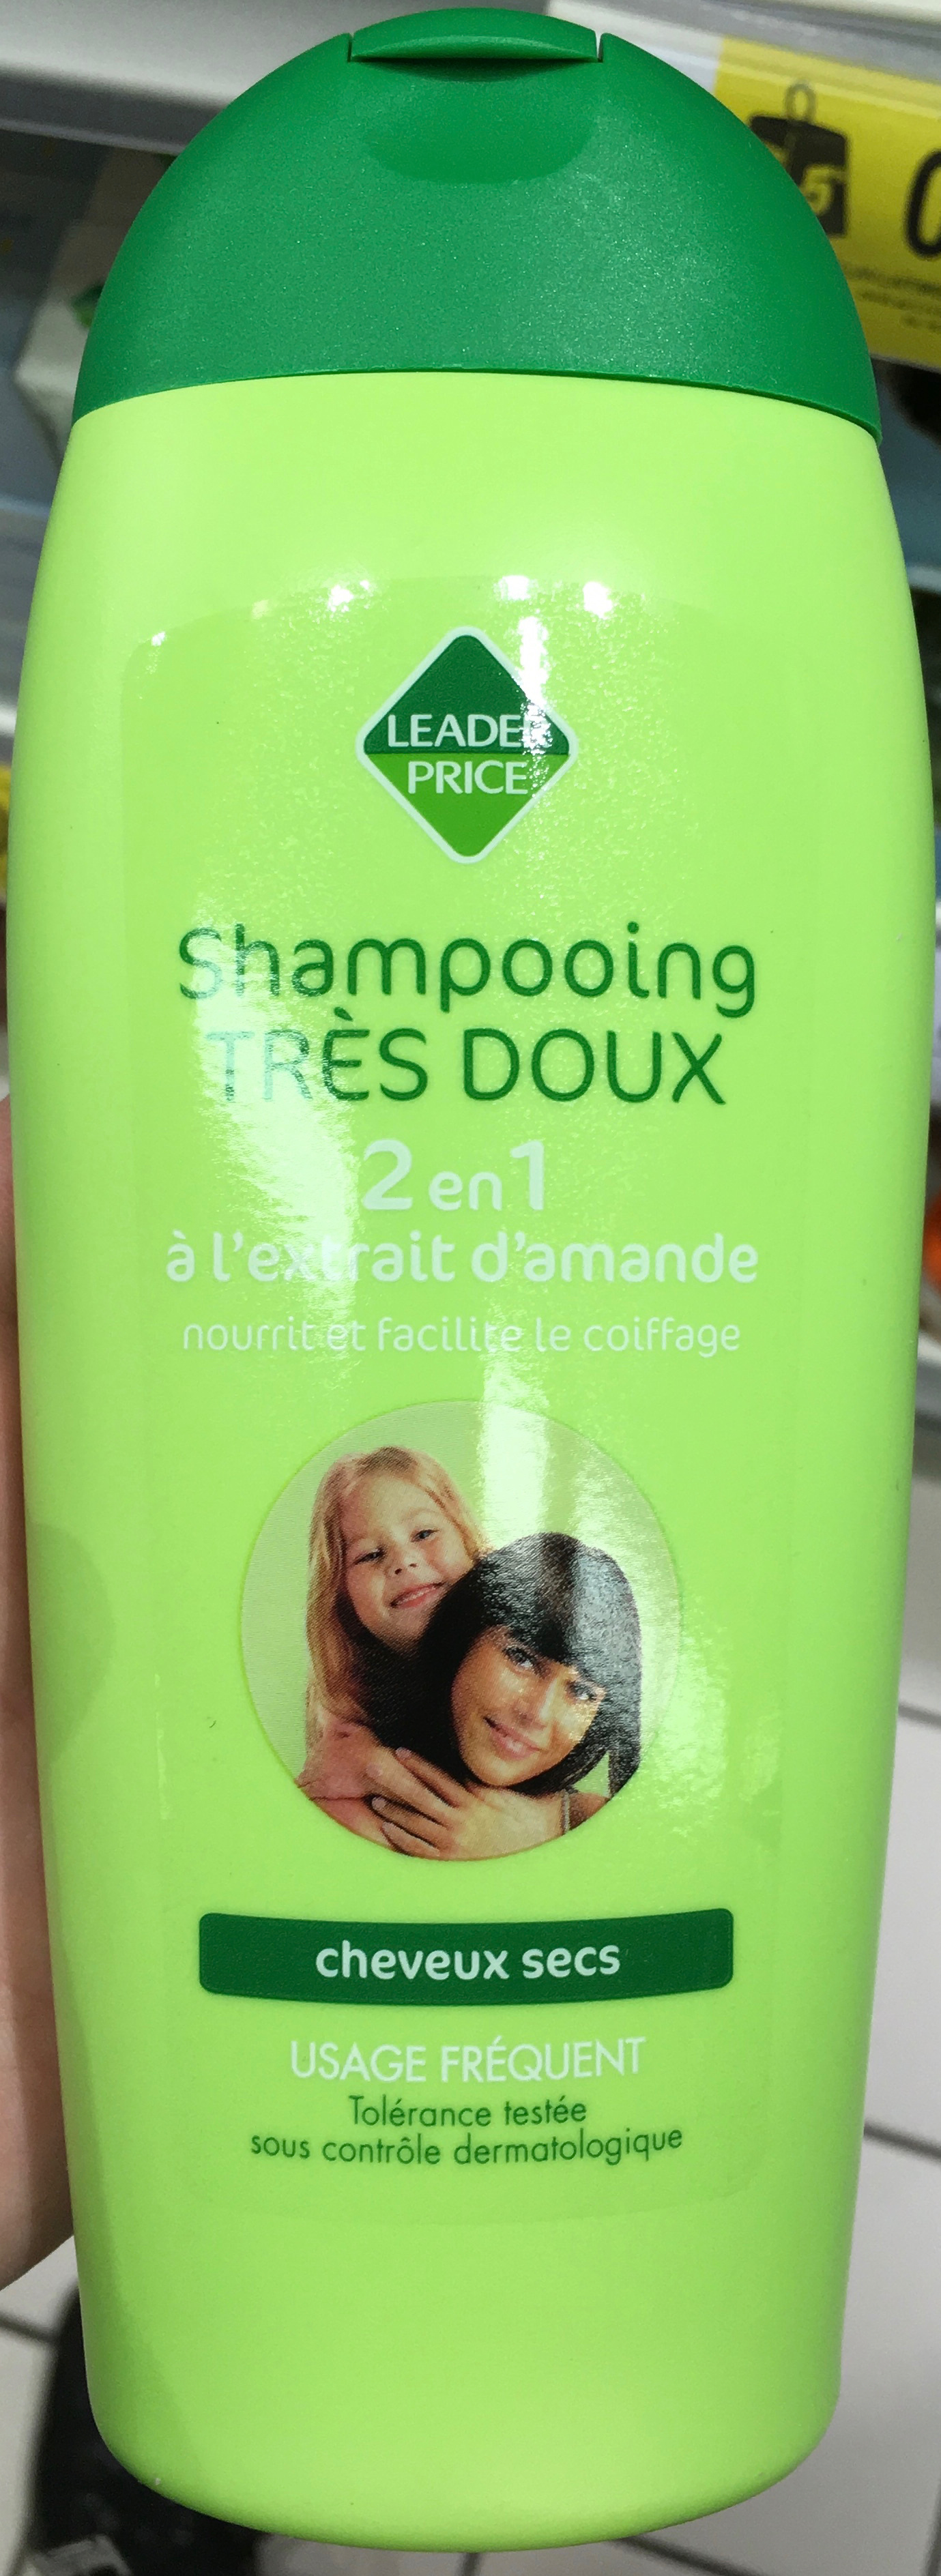 Shampooing très doux 2 en 1 - Produit - fr